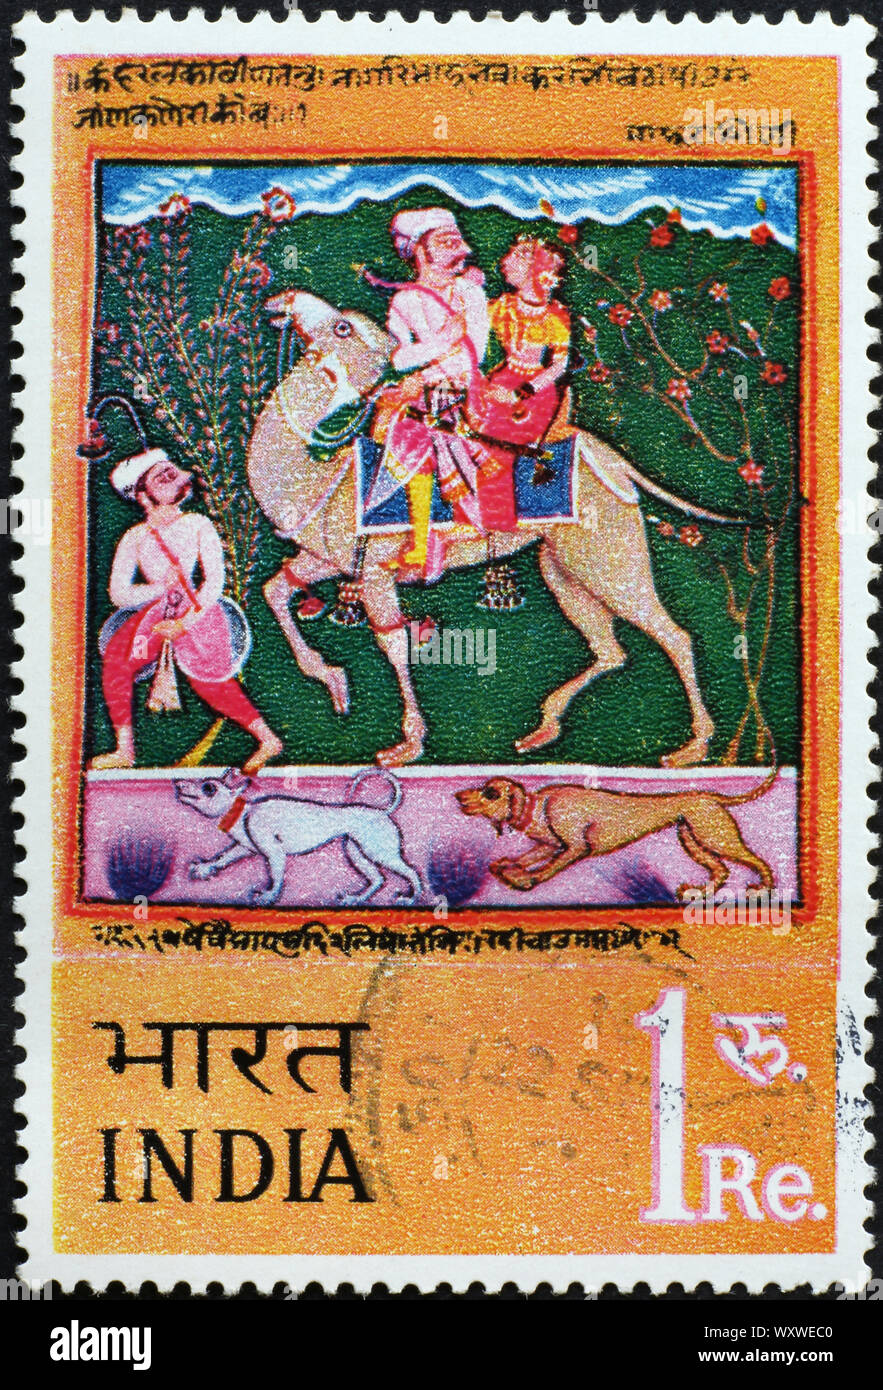 Peinture indienne sur timbre-poste Banque D'Images